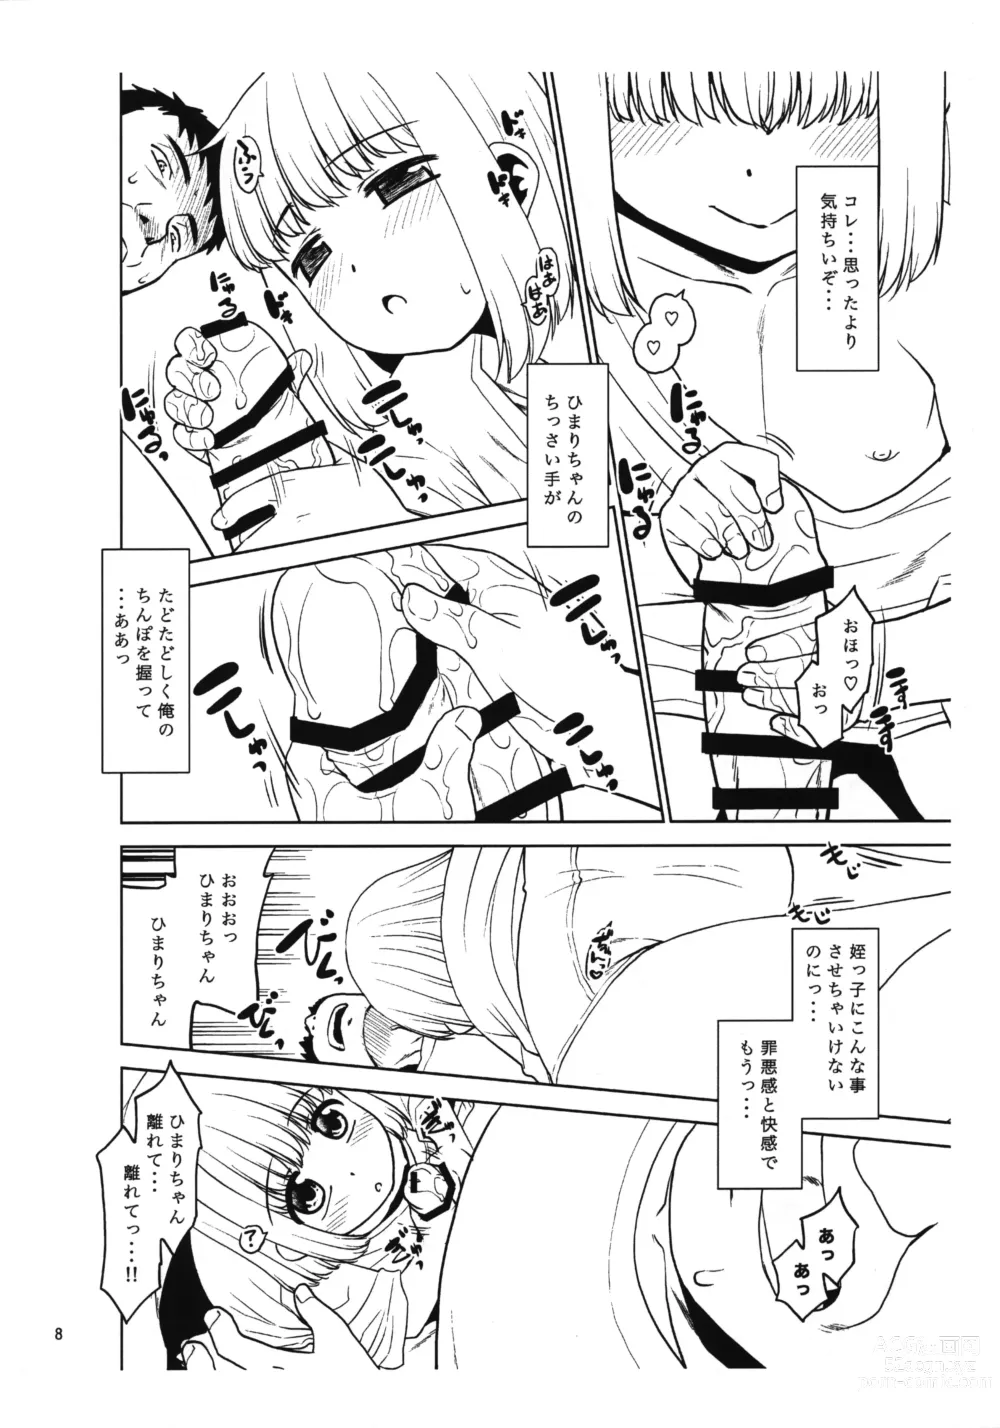 Page 7 of doujinshi Meikko ni Asadachi o Mirareta node Eroi koto o Oshietemita. Preview-ban